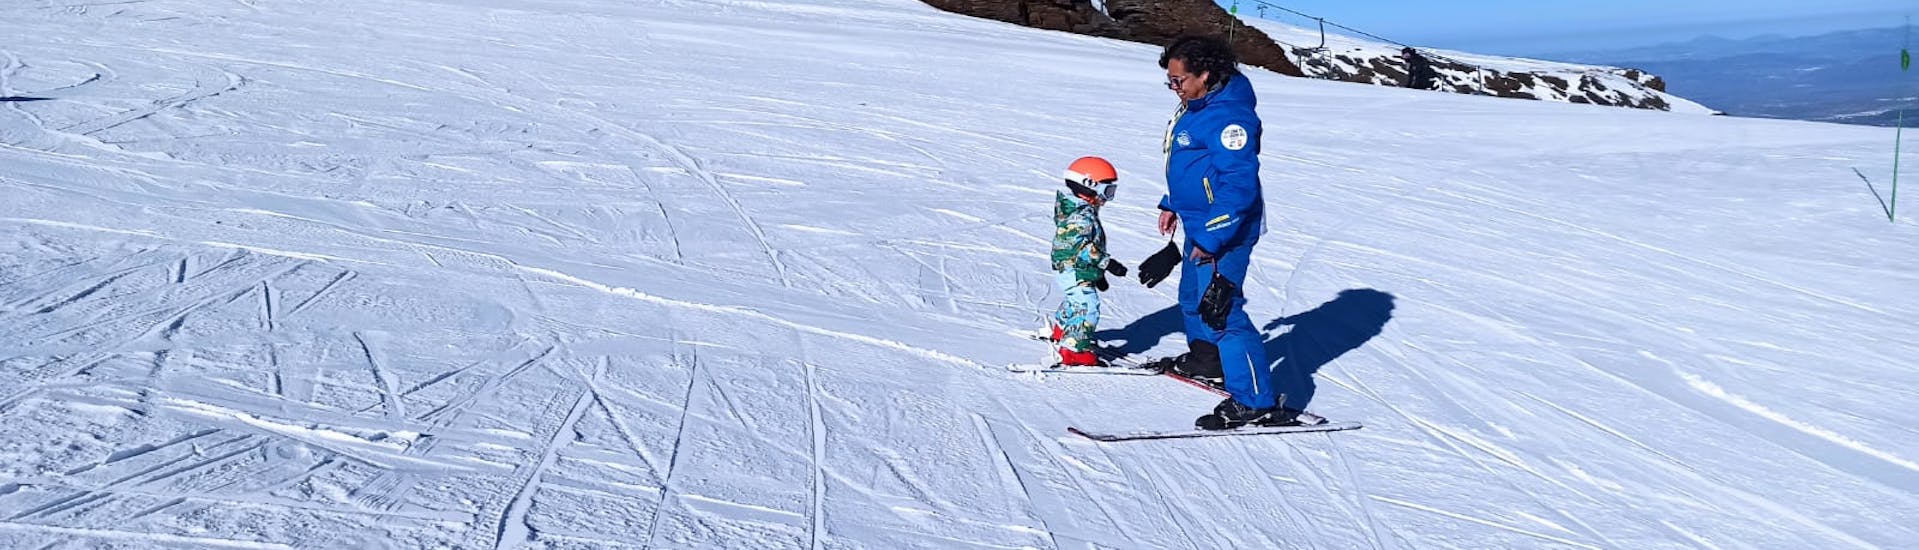 Cours particuliers de ski pour Enfants (3-12 ans) de Tous Niveaux.